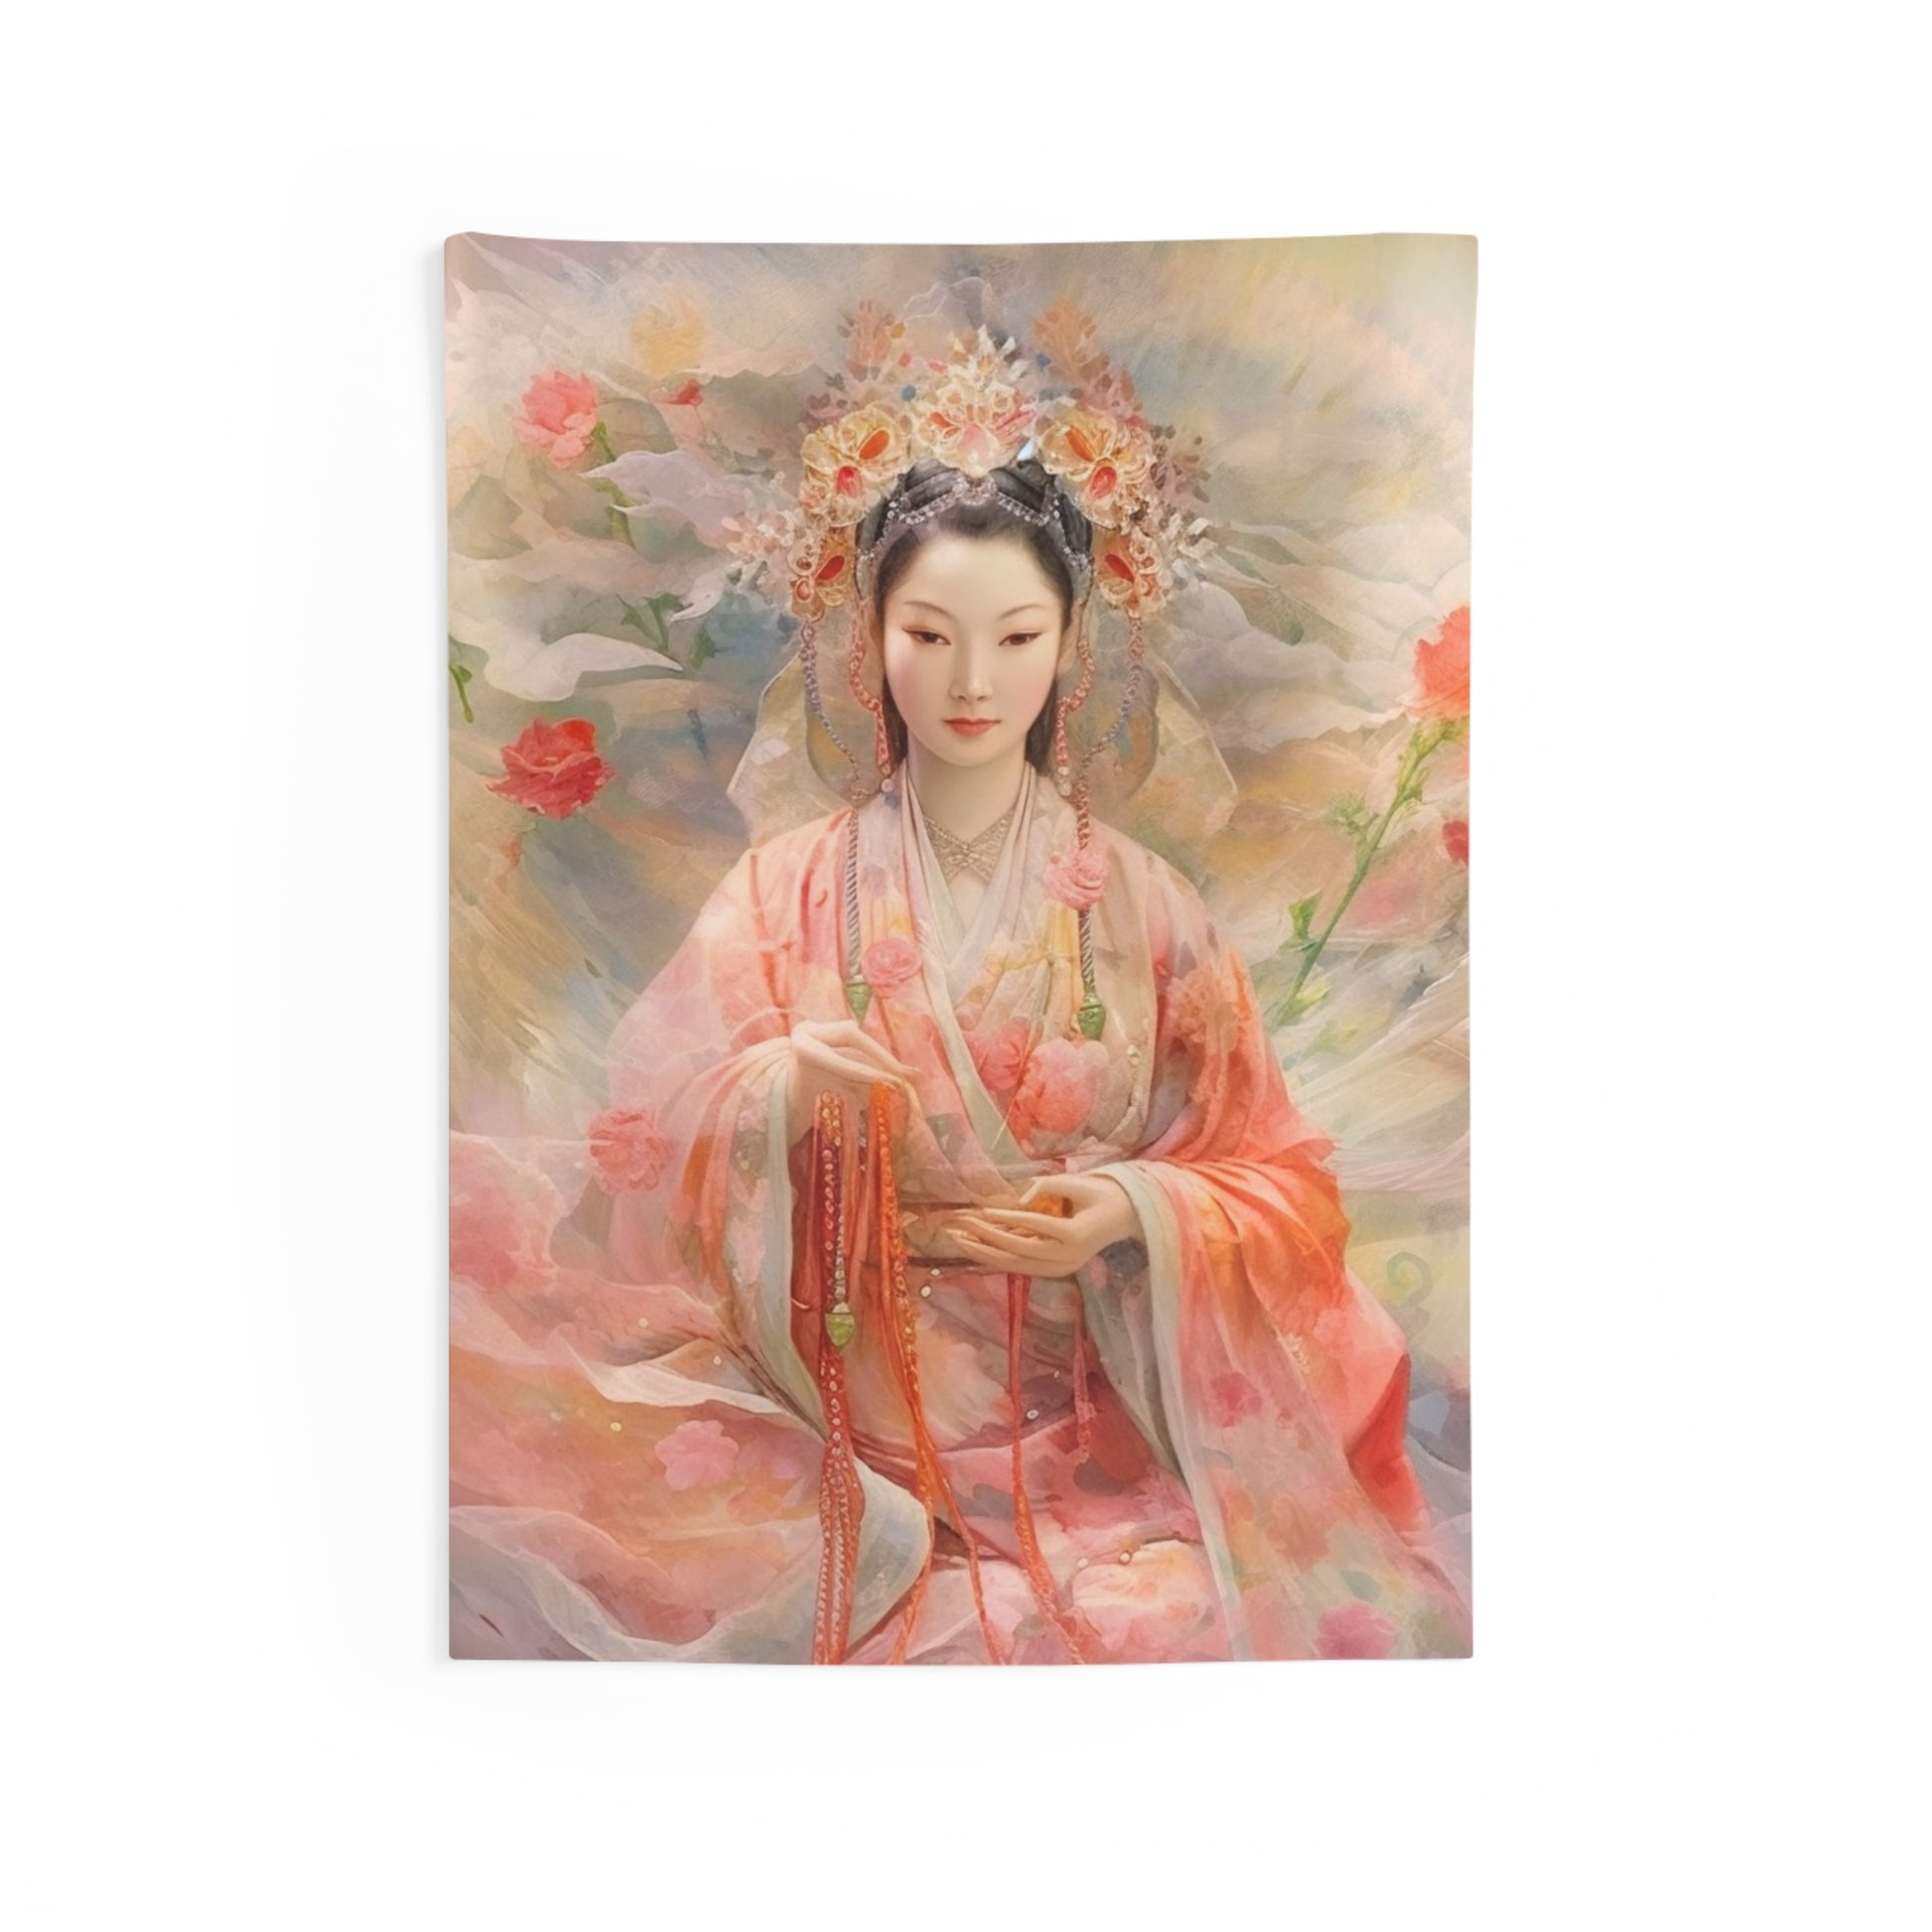 Quan Yin Wall Tapestry - Guan Yin, Kwan Yin, Goddess of Compassion - Spiritual Wall Decor for Buddhism Home Decor 26" × 36"  